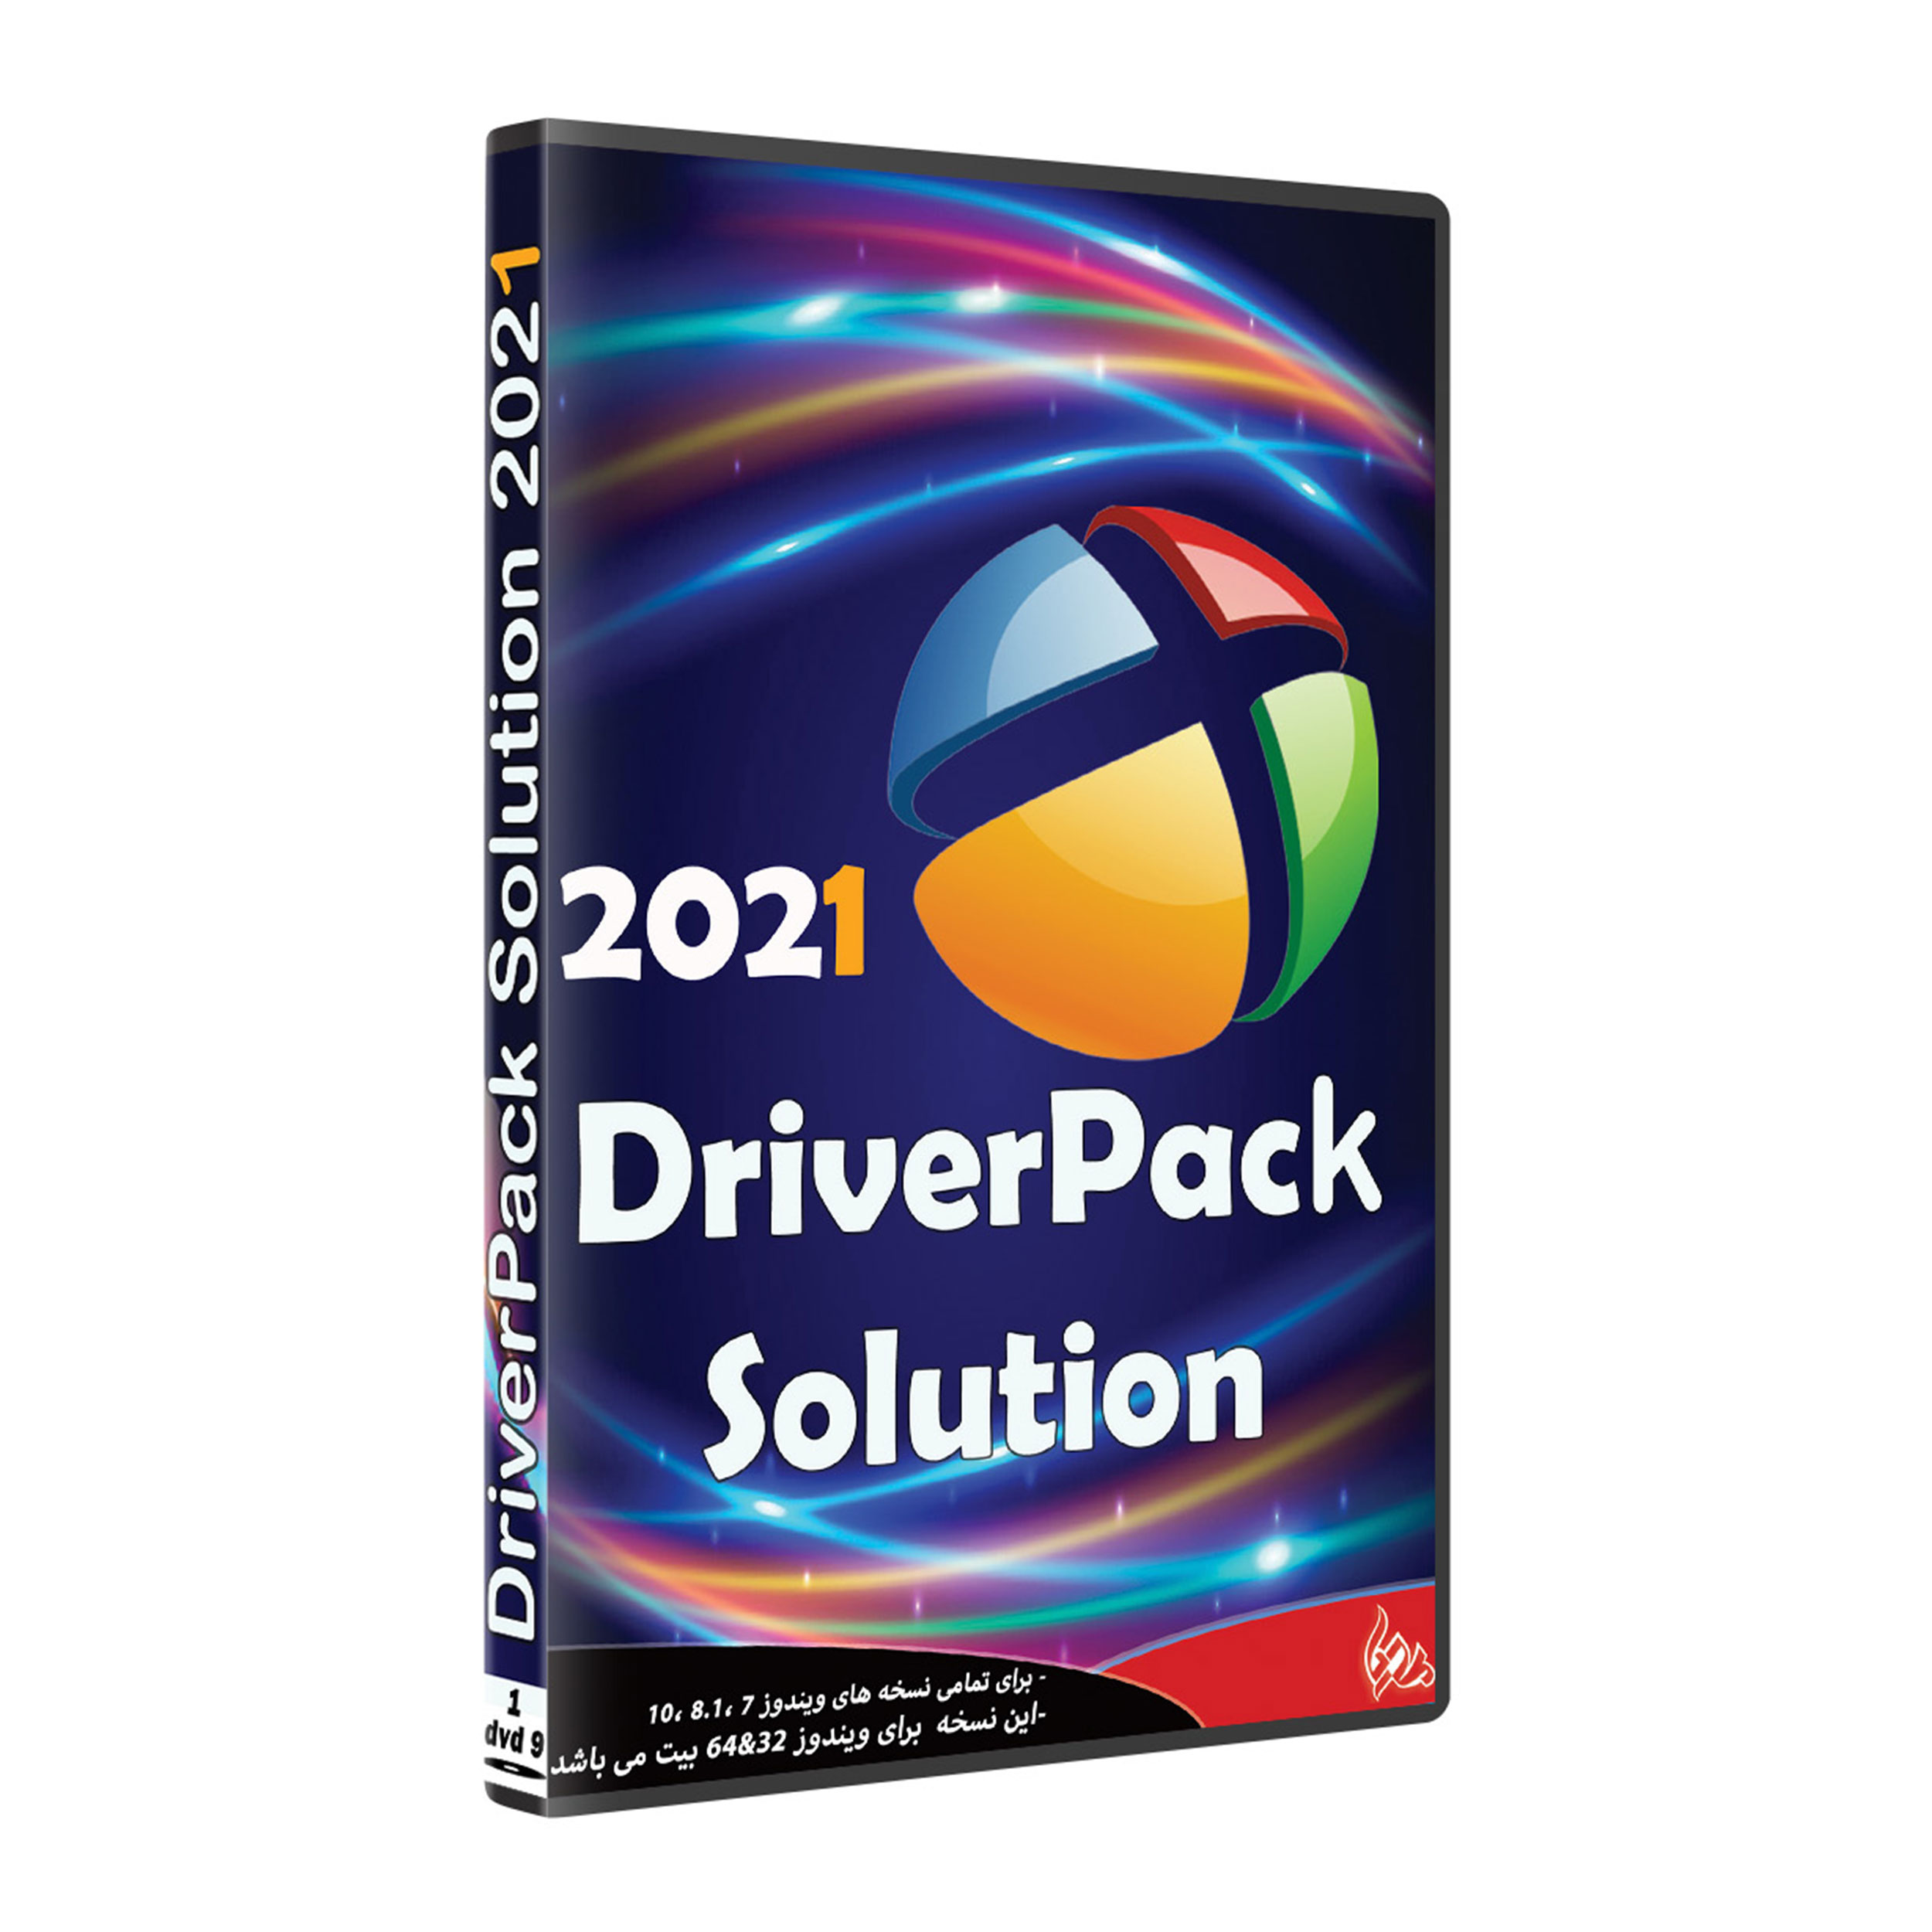 نرم افزار DRIVER PACK SOLUTION 2021 نشر پدیا